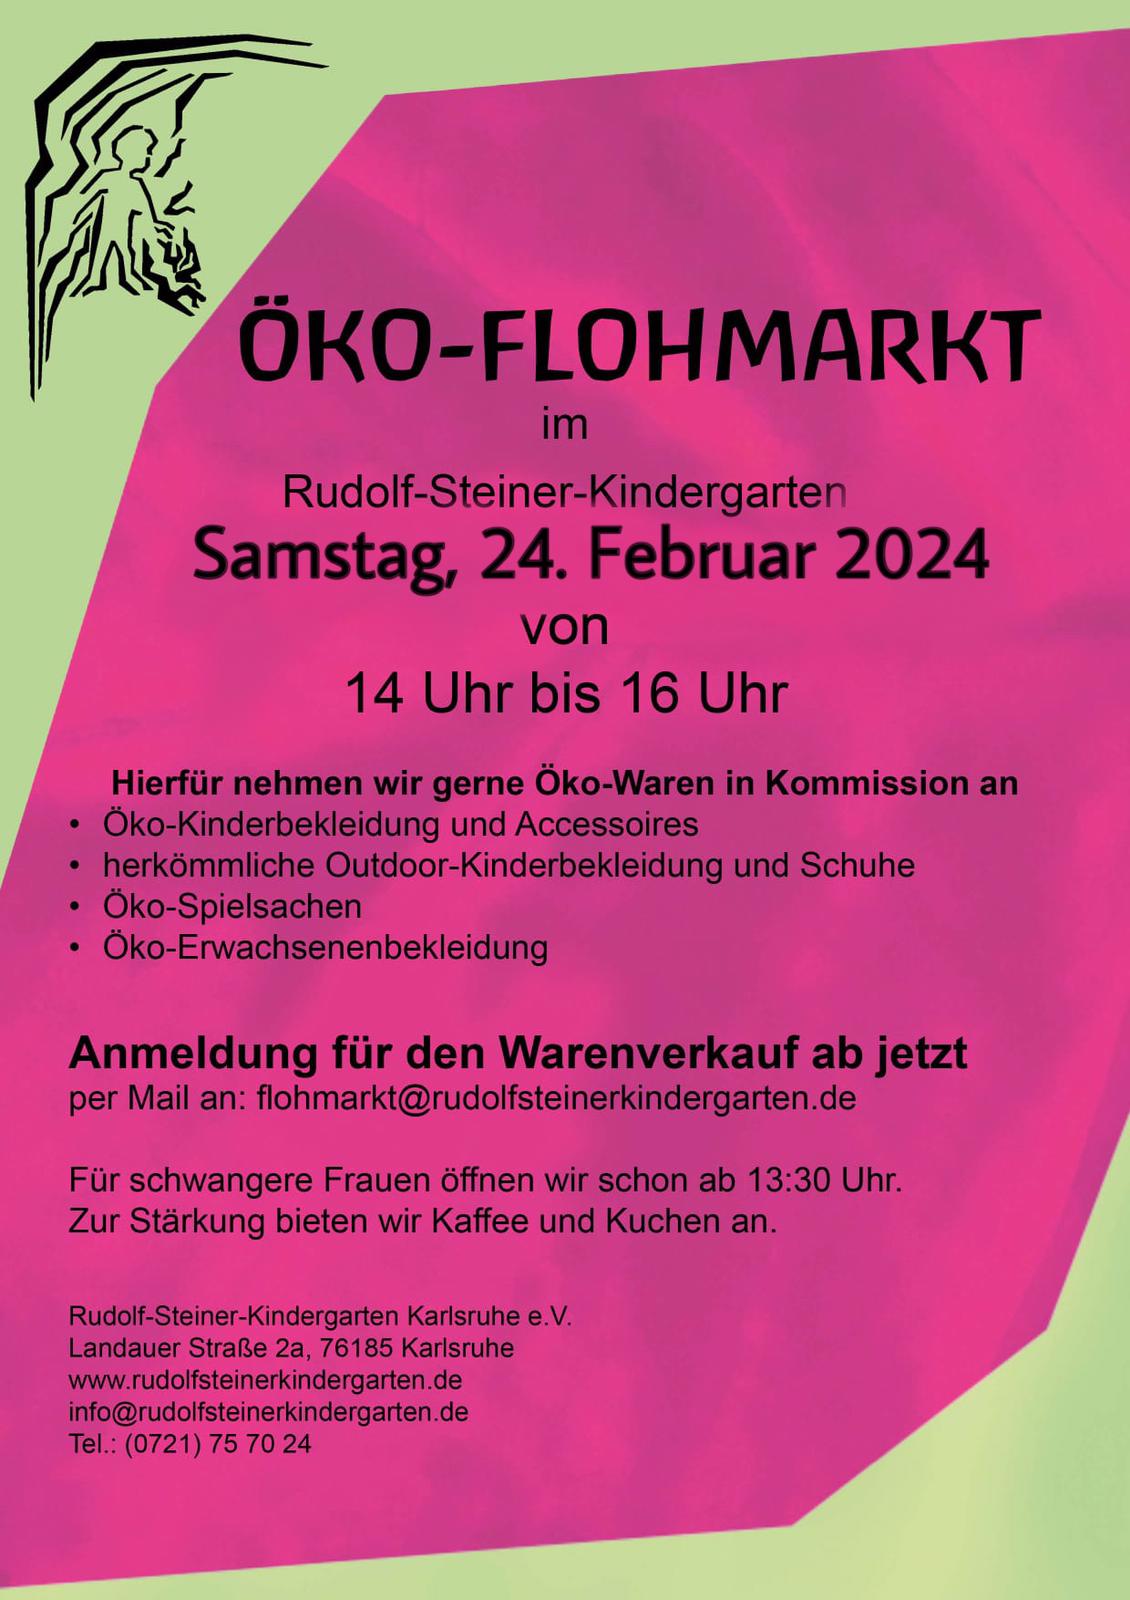 Öko Flohmarkt auf Kommissionsbasis | Rudolf Steiner Kindergarten